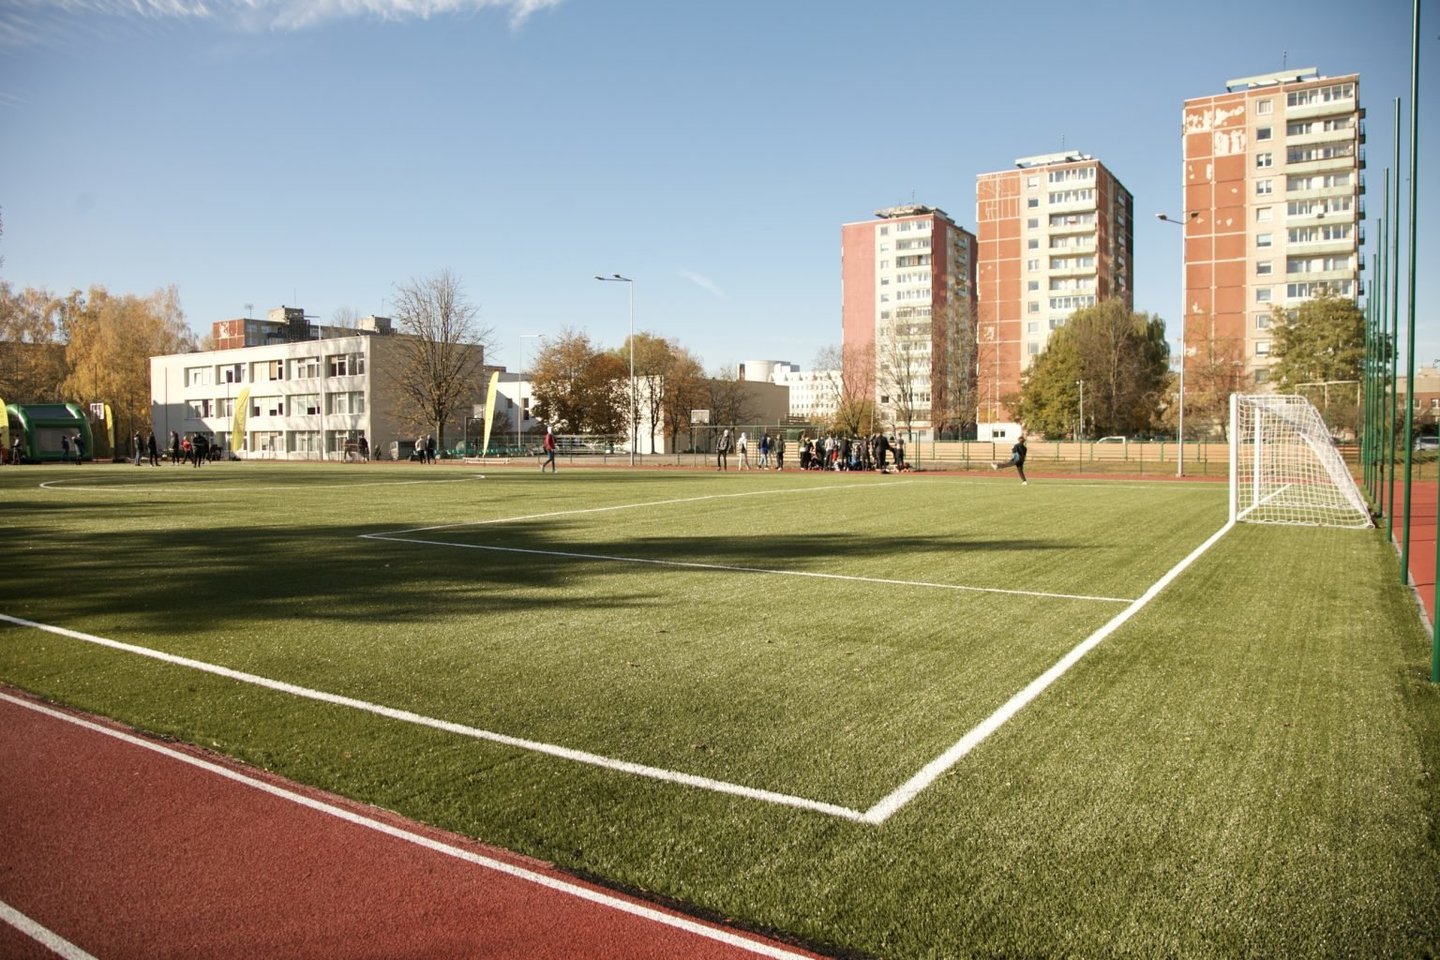 Vilniaus miesto savivaldybė užbaigė Karoliniškių gimnazijos stadiono rekonstrukciją ir atvėrė aikštyną naudojimui.<br>Kastyčio Mačiūno nuotr.